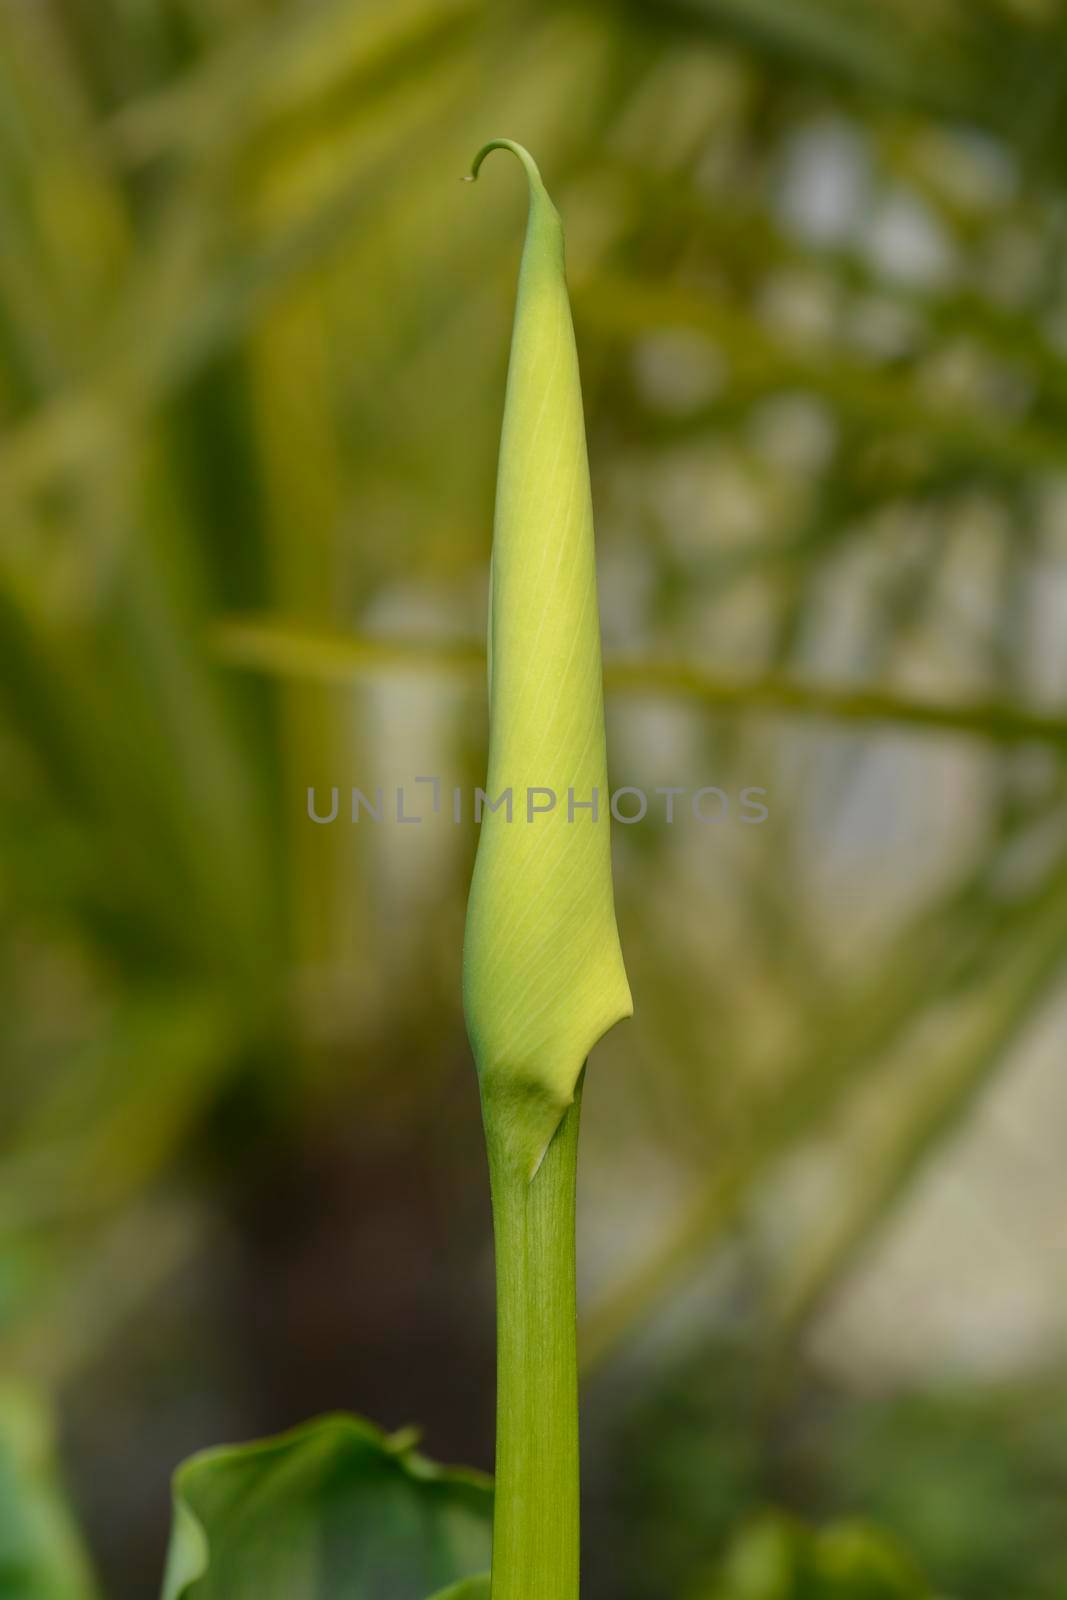 Garden calla lily flower bud - Latin name - Zantedeschia aethiopica